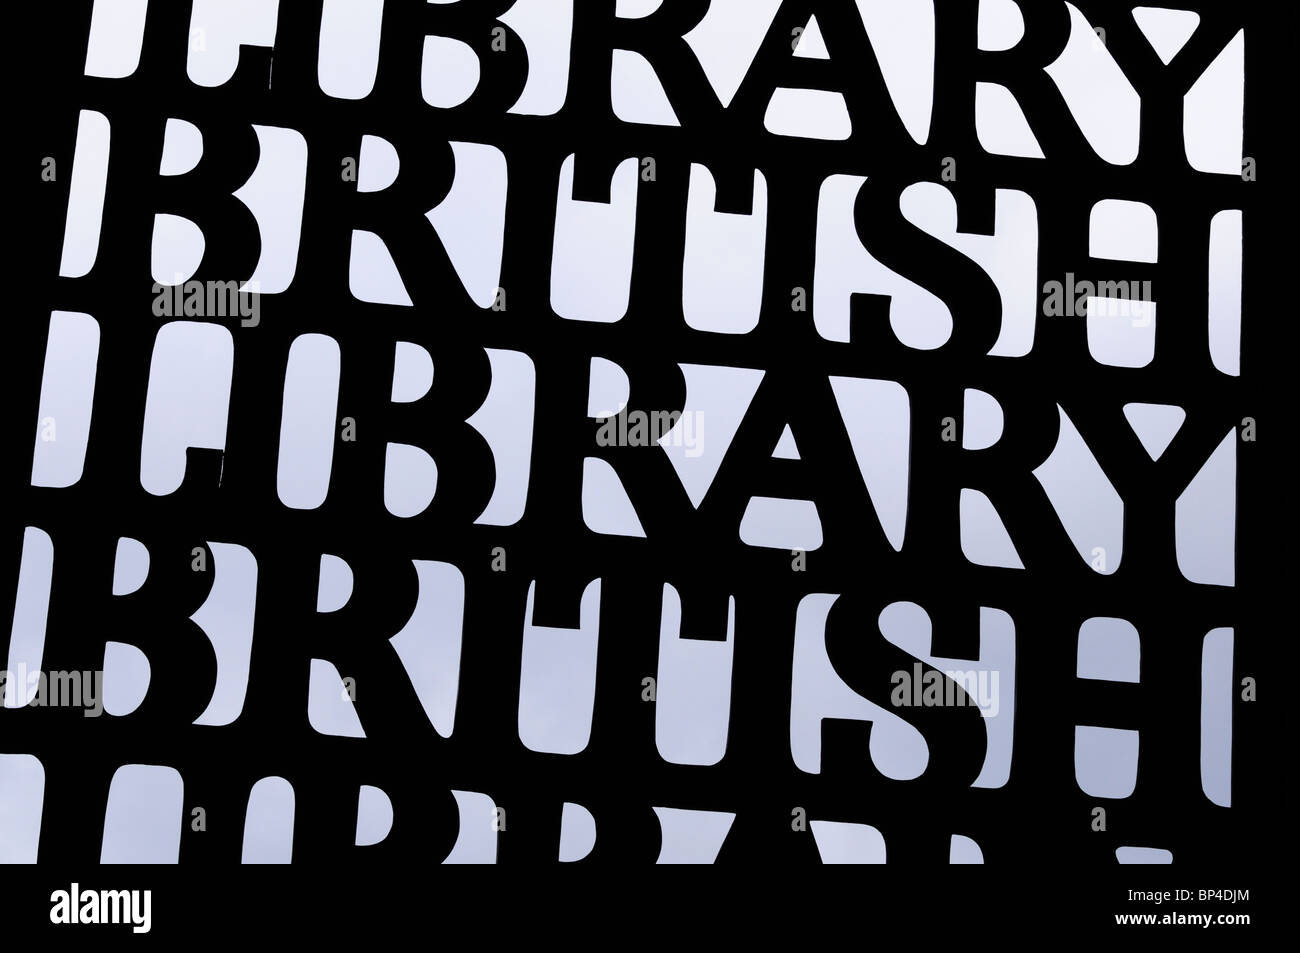 British Library sign, Euston Road, London England, UK Stock Photo